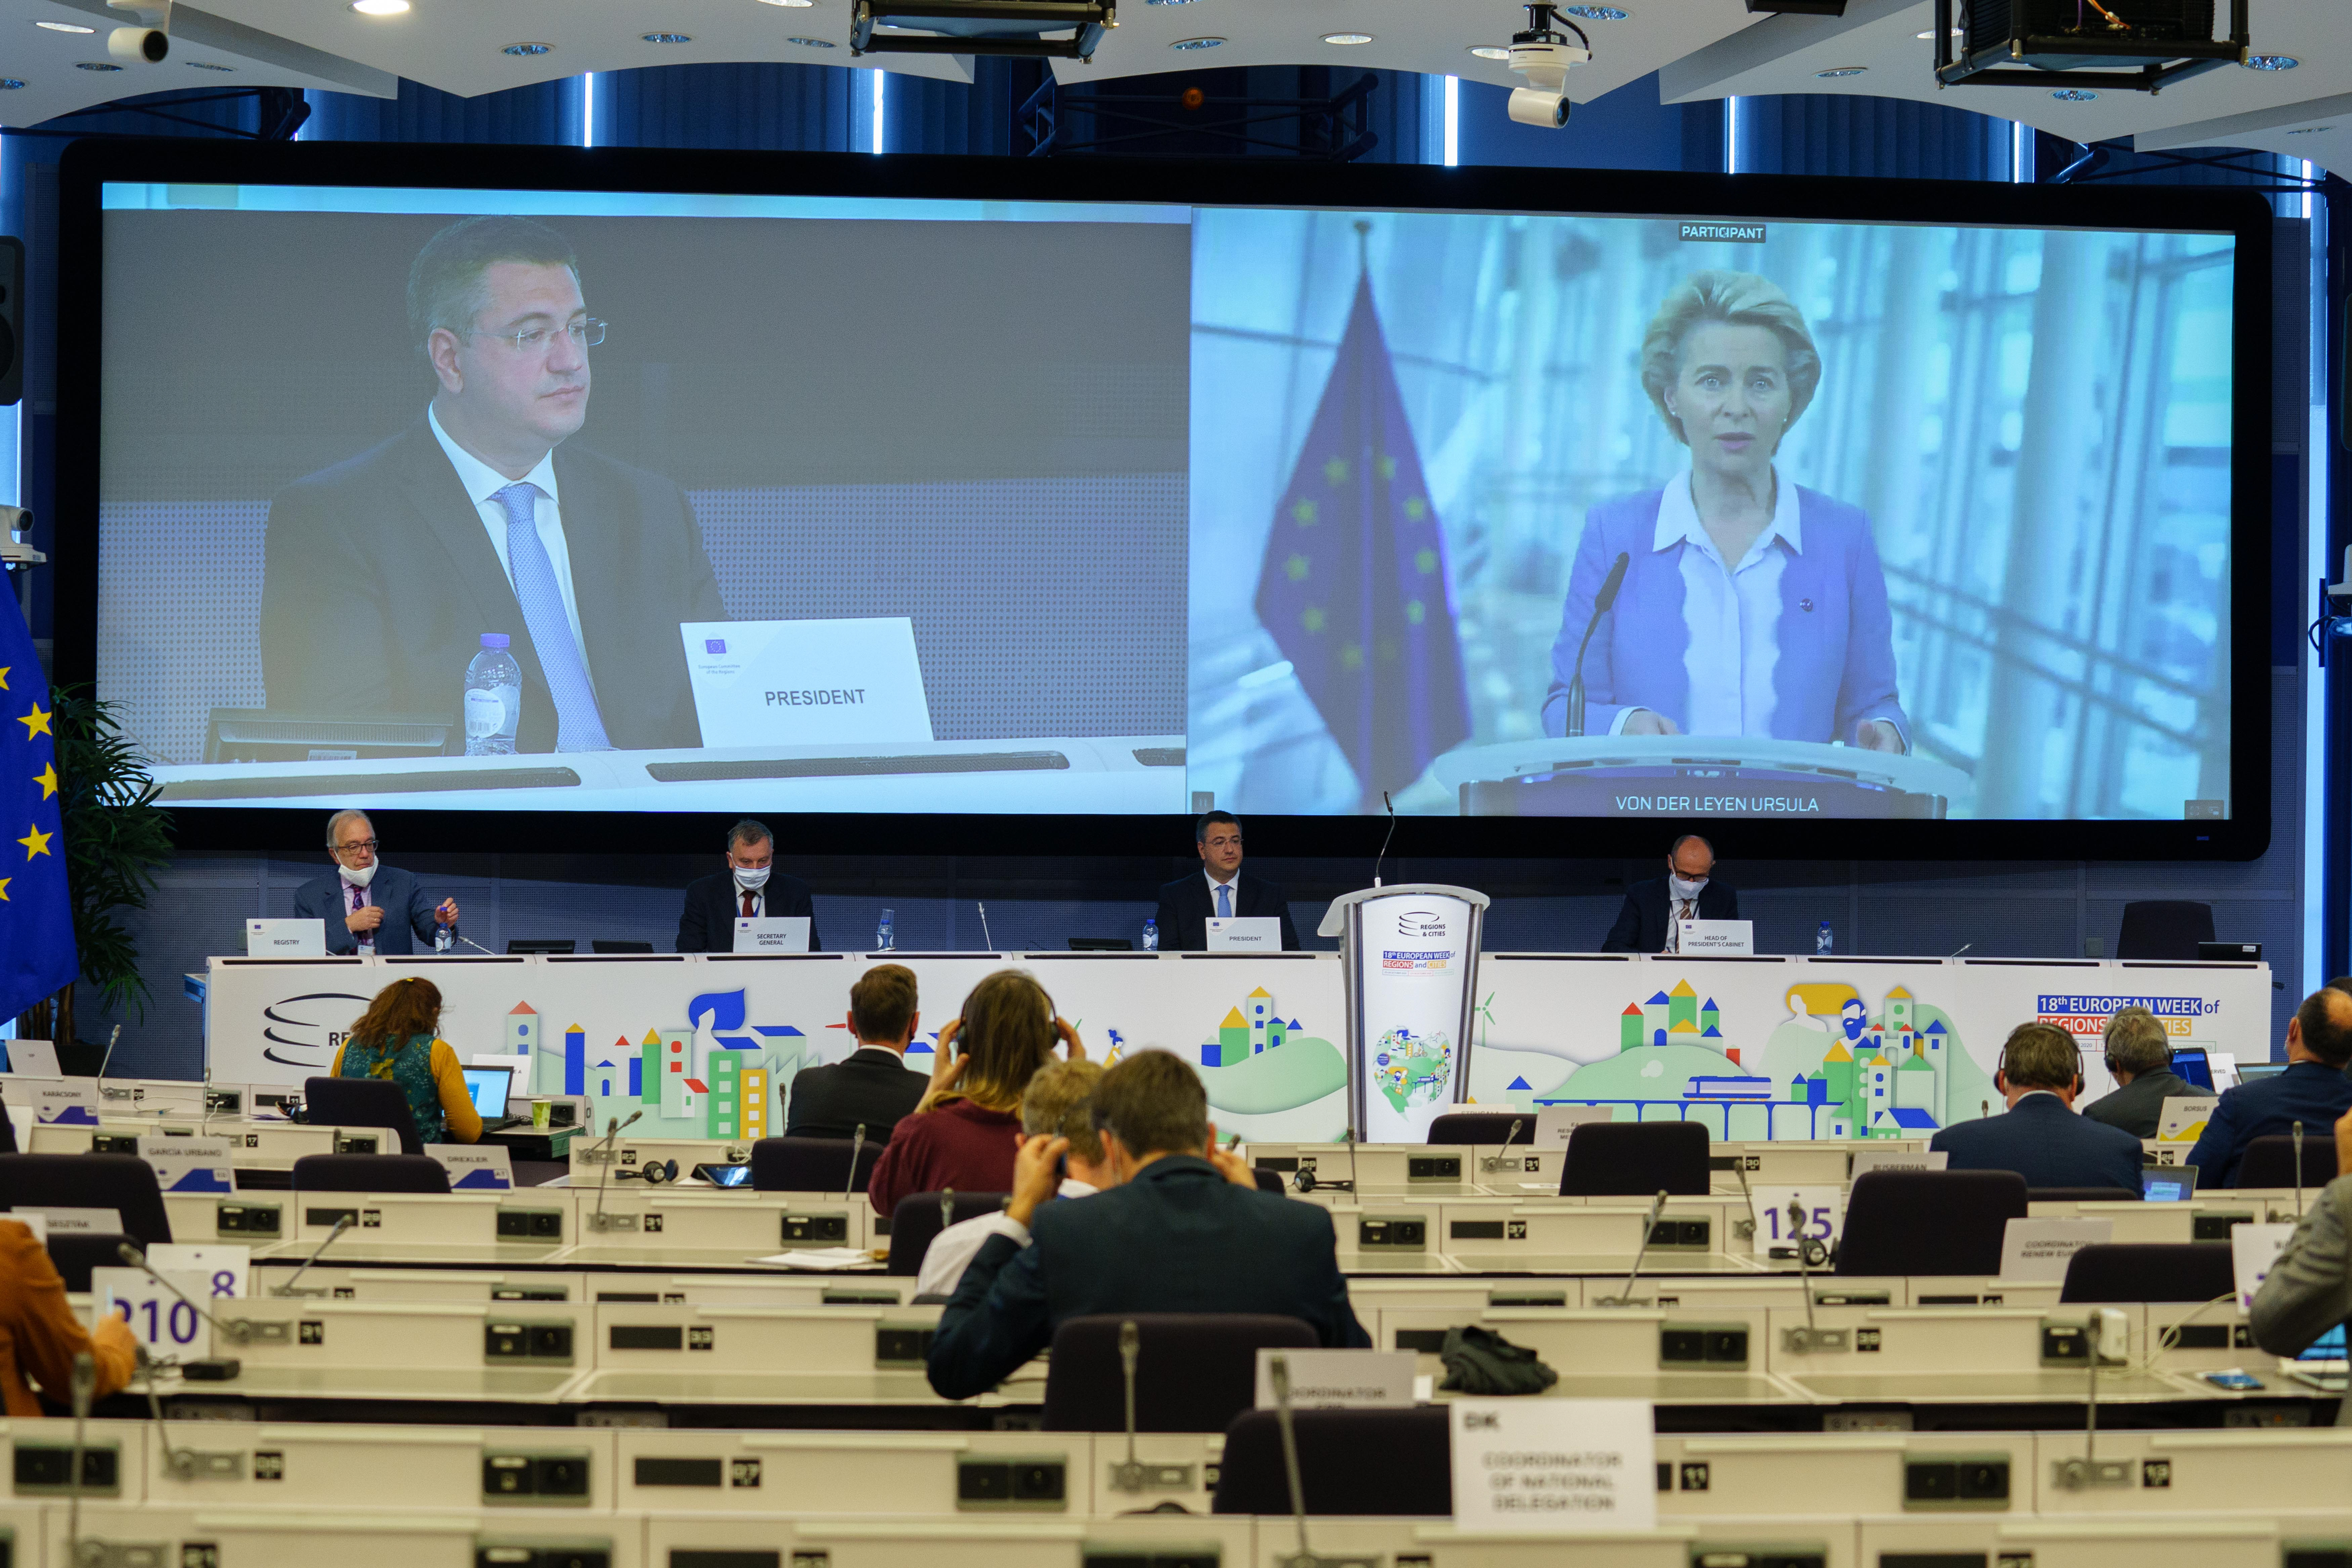 Eiropas Komisijas prezidente uzsver pašvaldību vadošo lomu Eiropas attīstībā